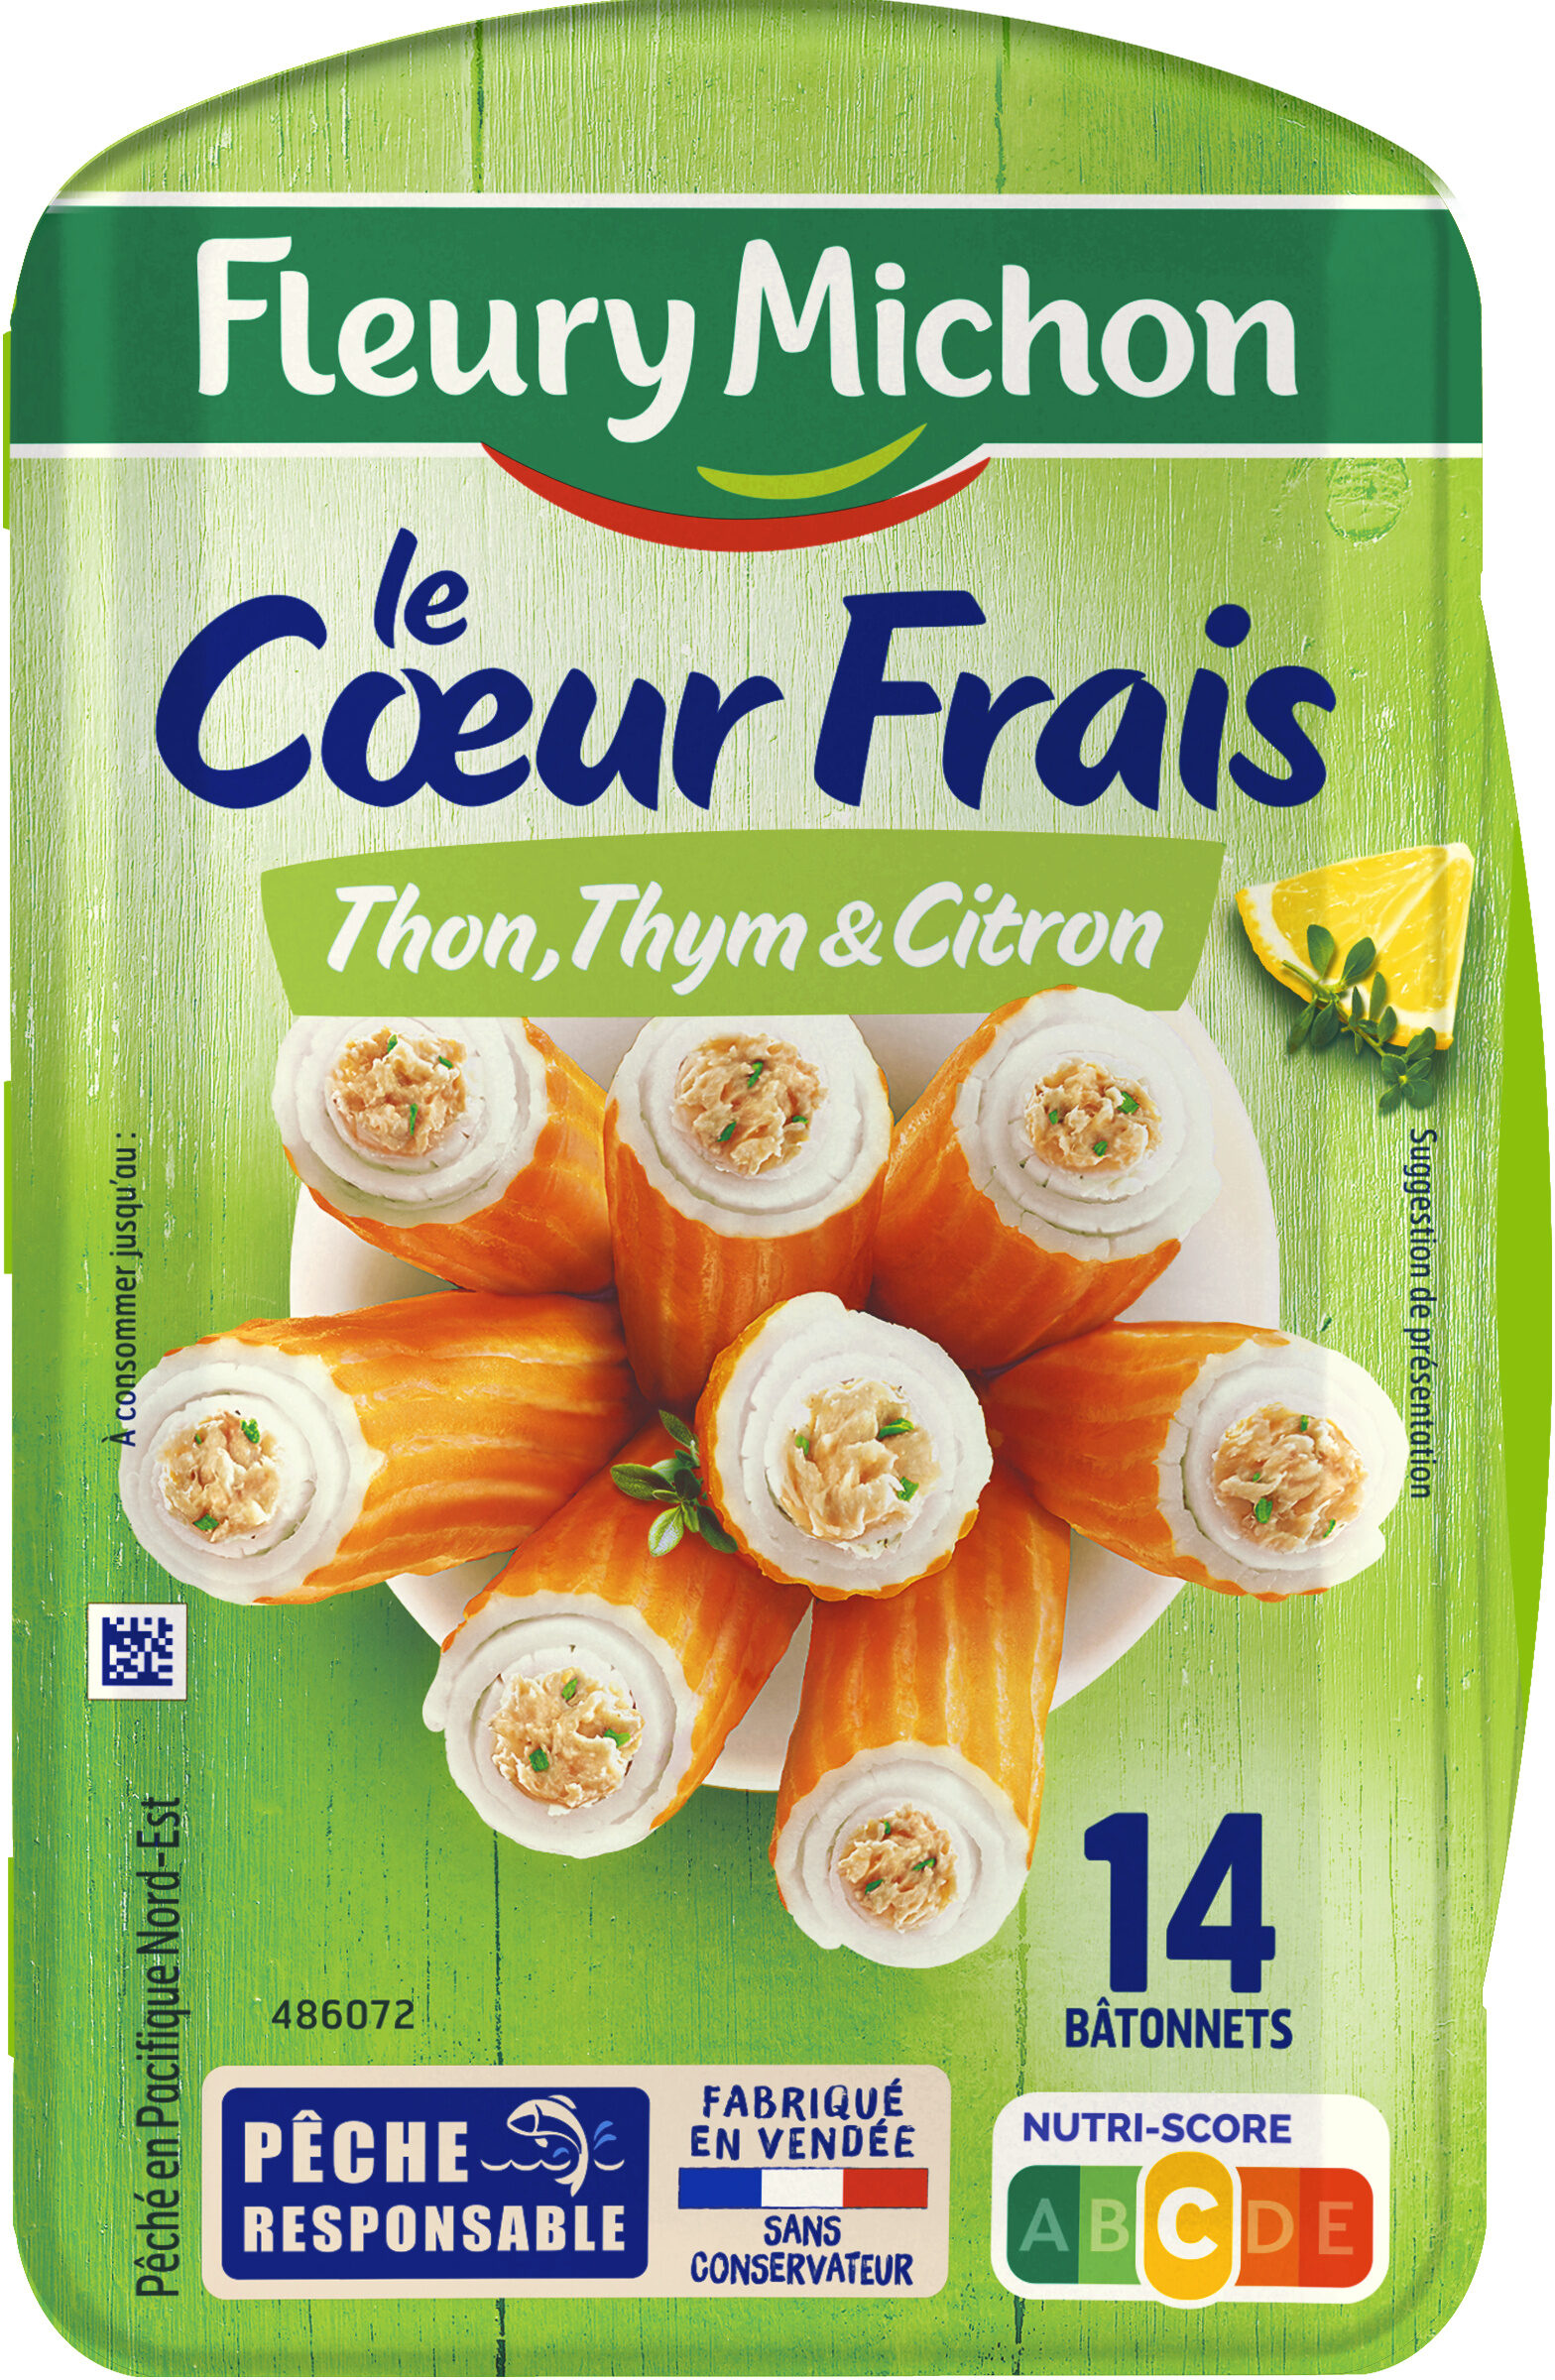 Coeur Frais - Thon, Thym & Citron - Product - fr